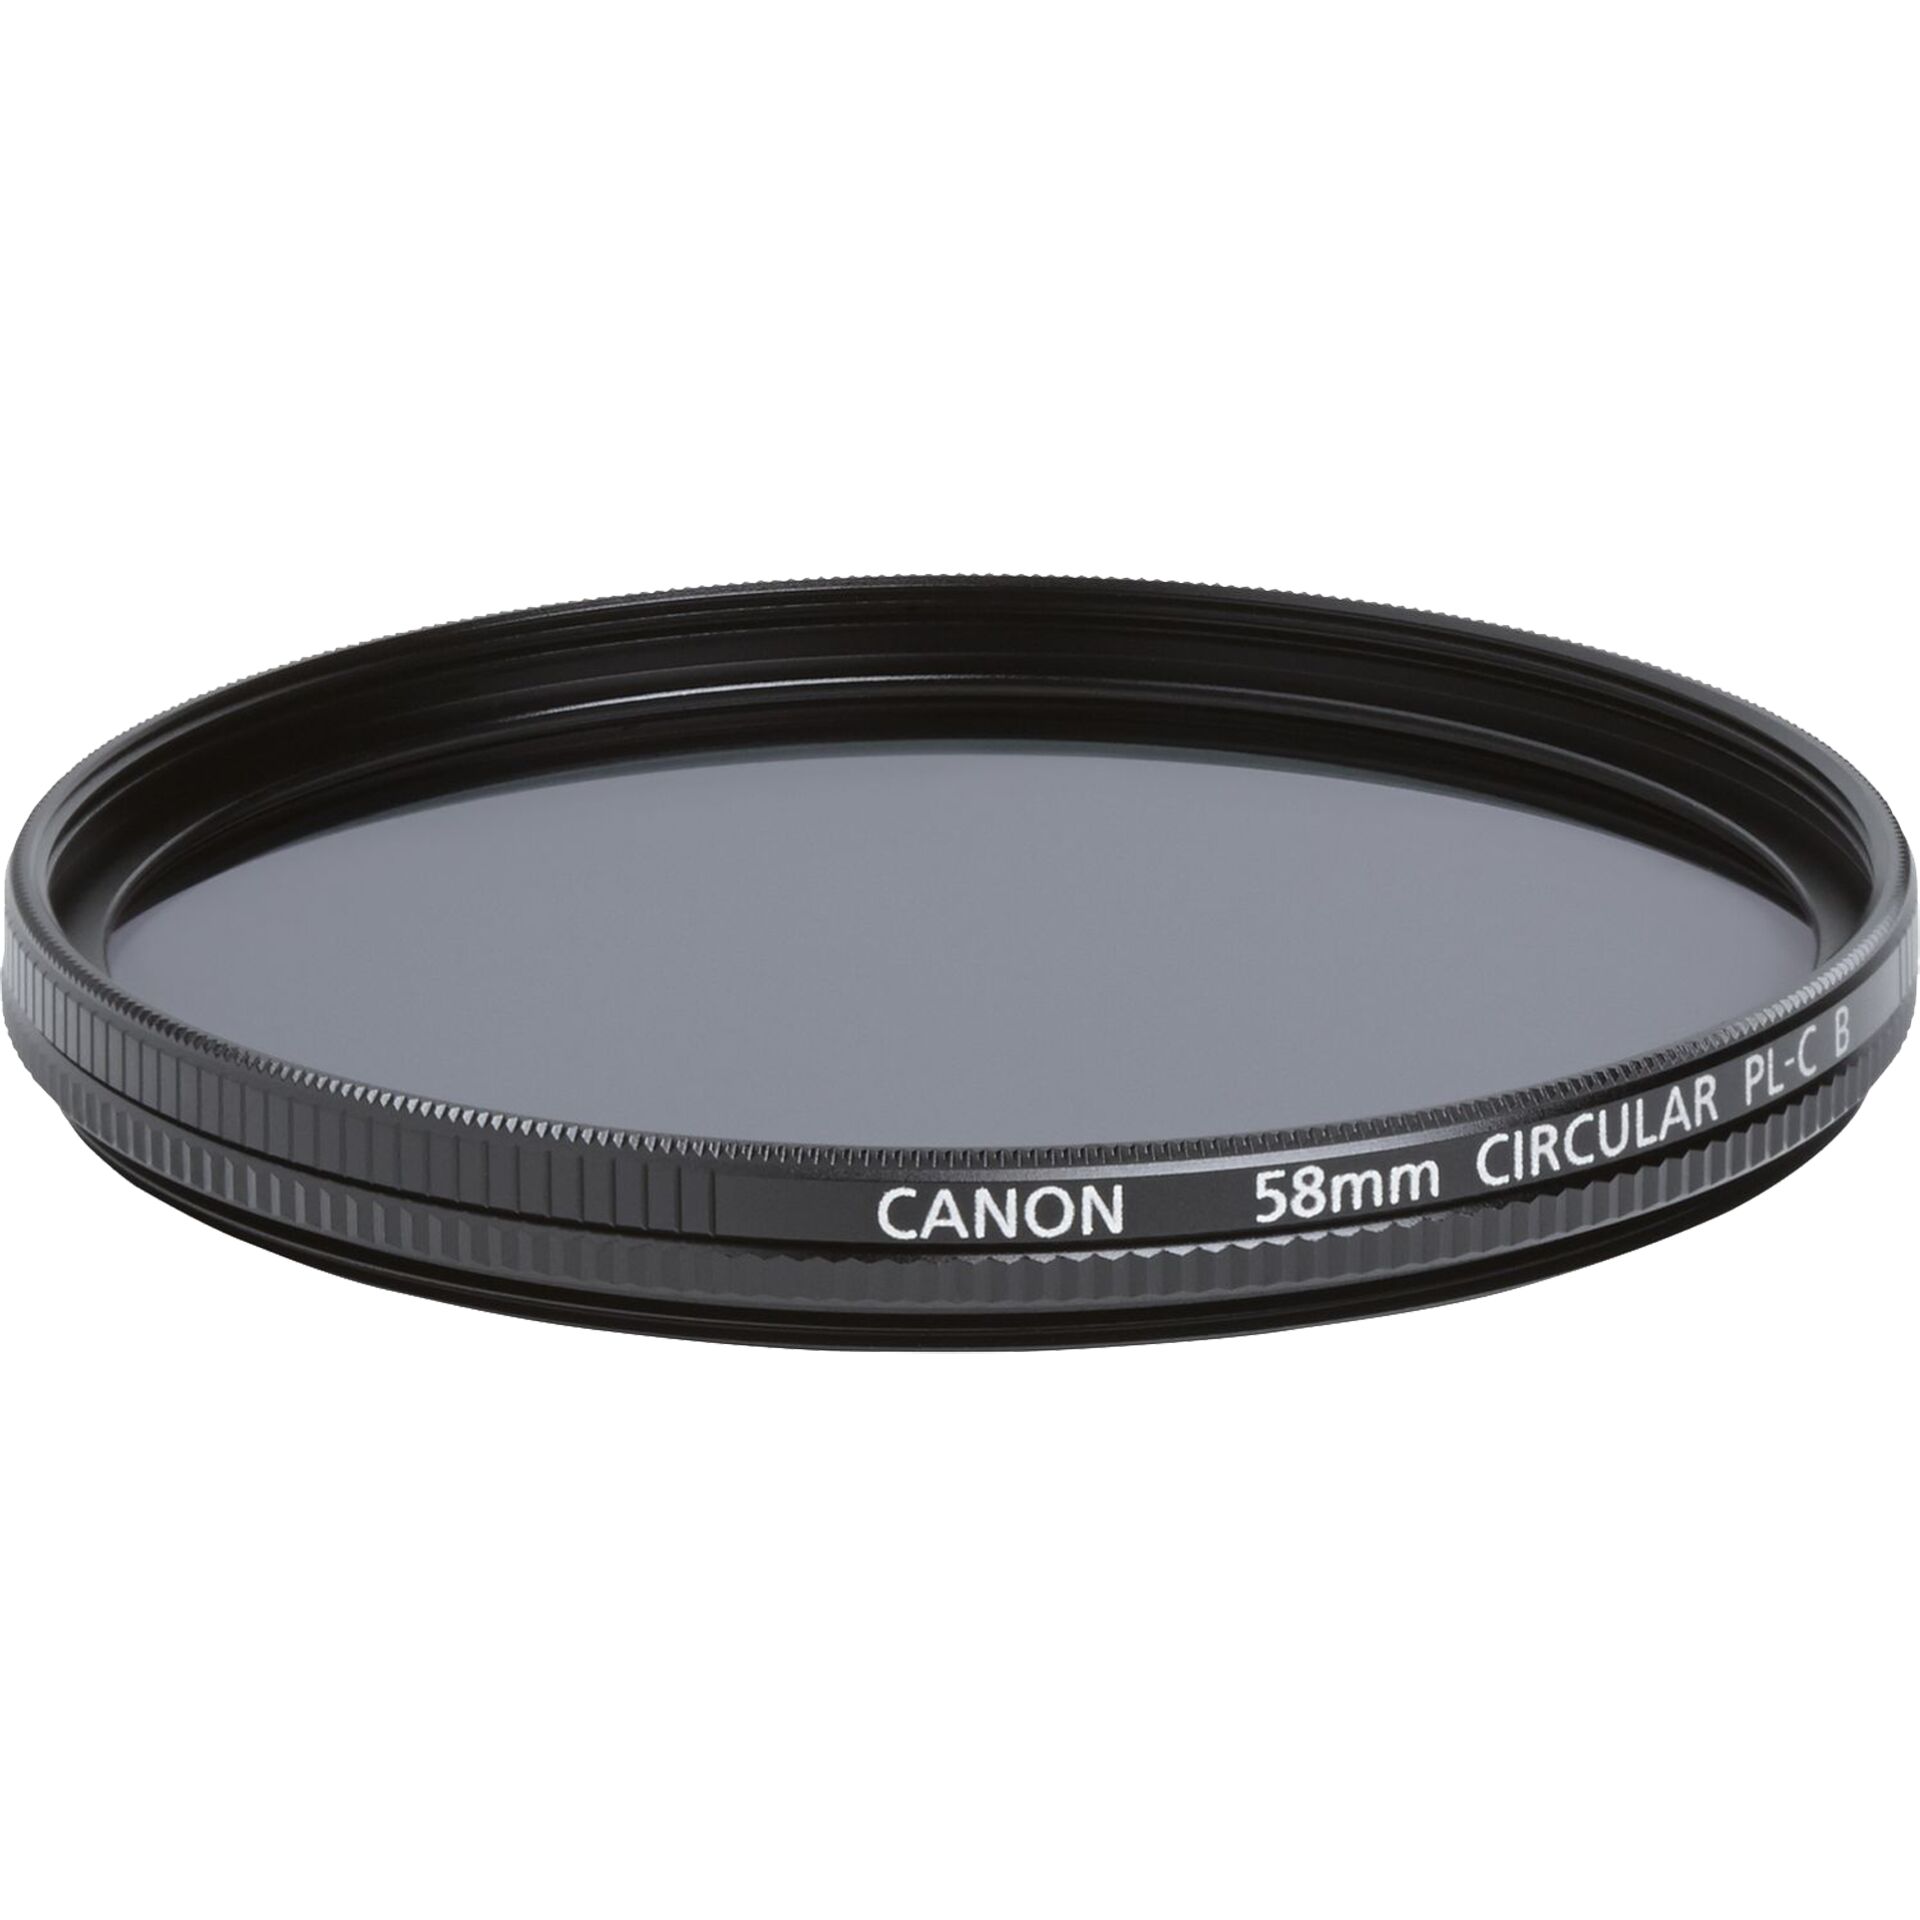 Canon PL-C B filtri 58